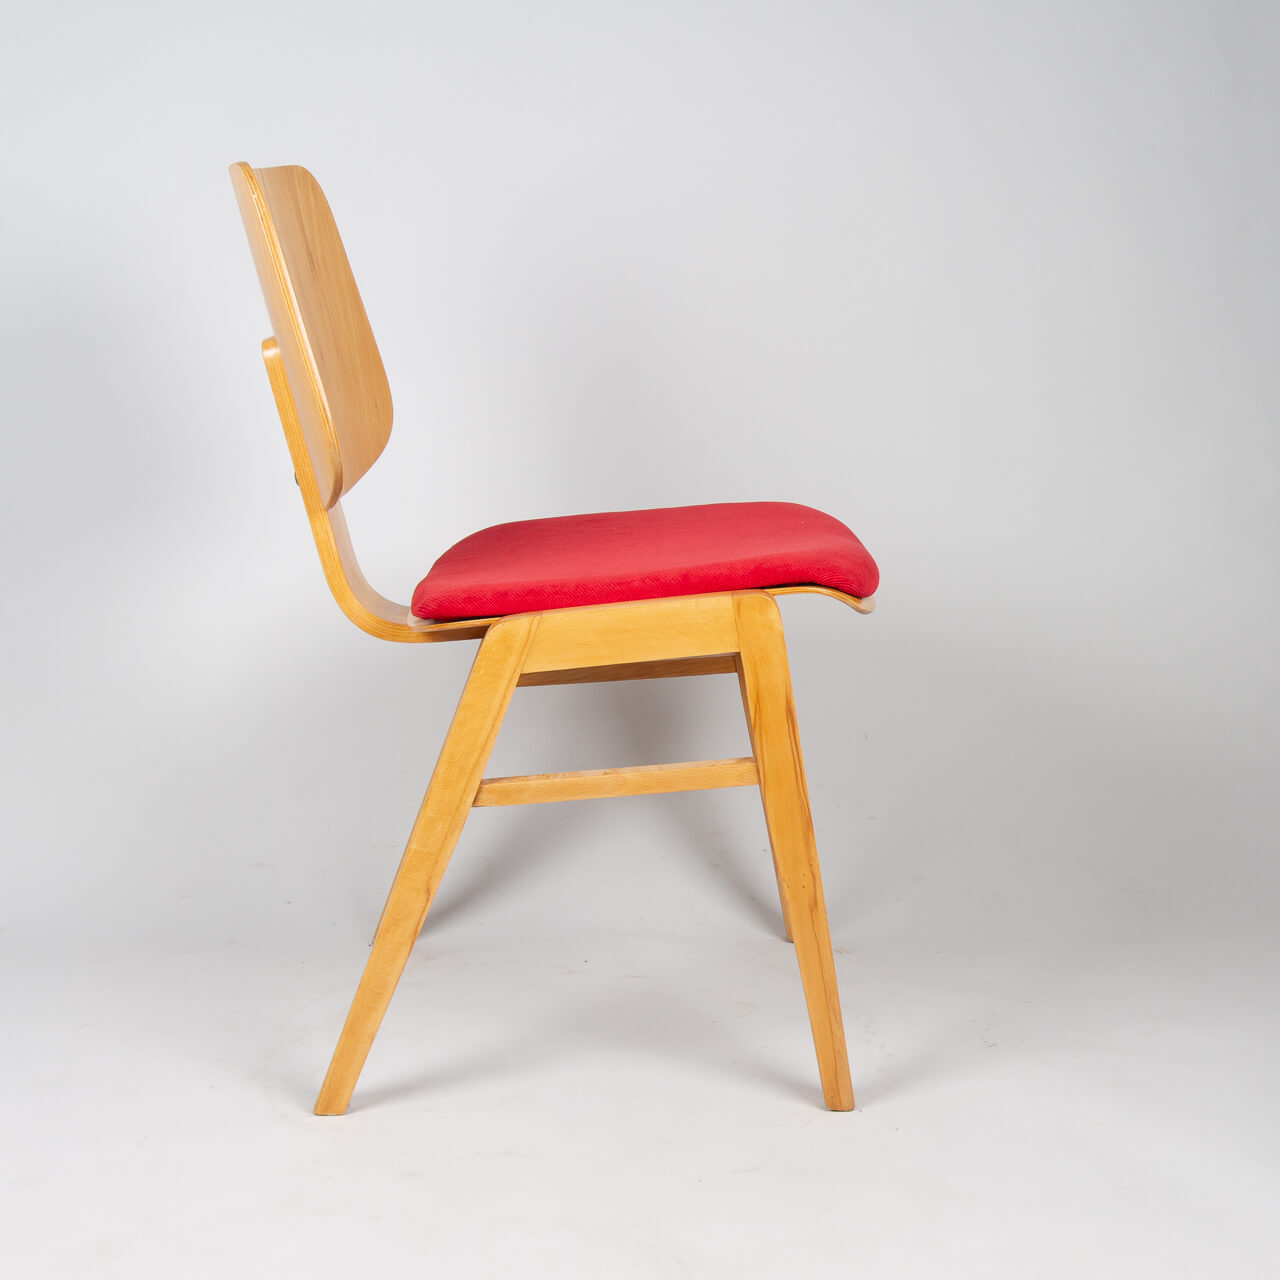 гнутоклееные изделия из фанеры для стульев